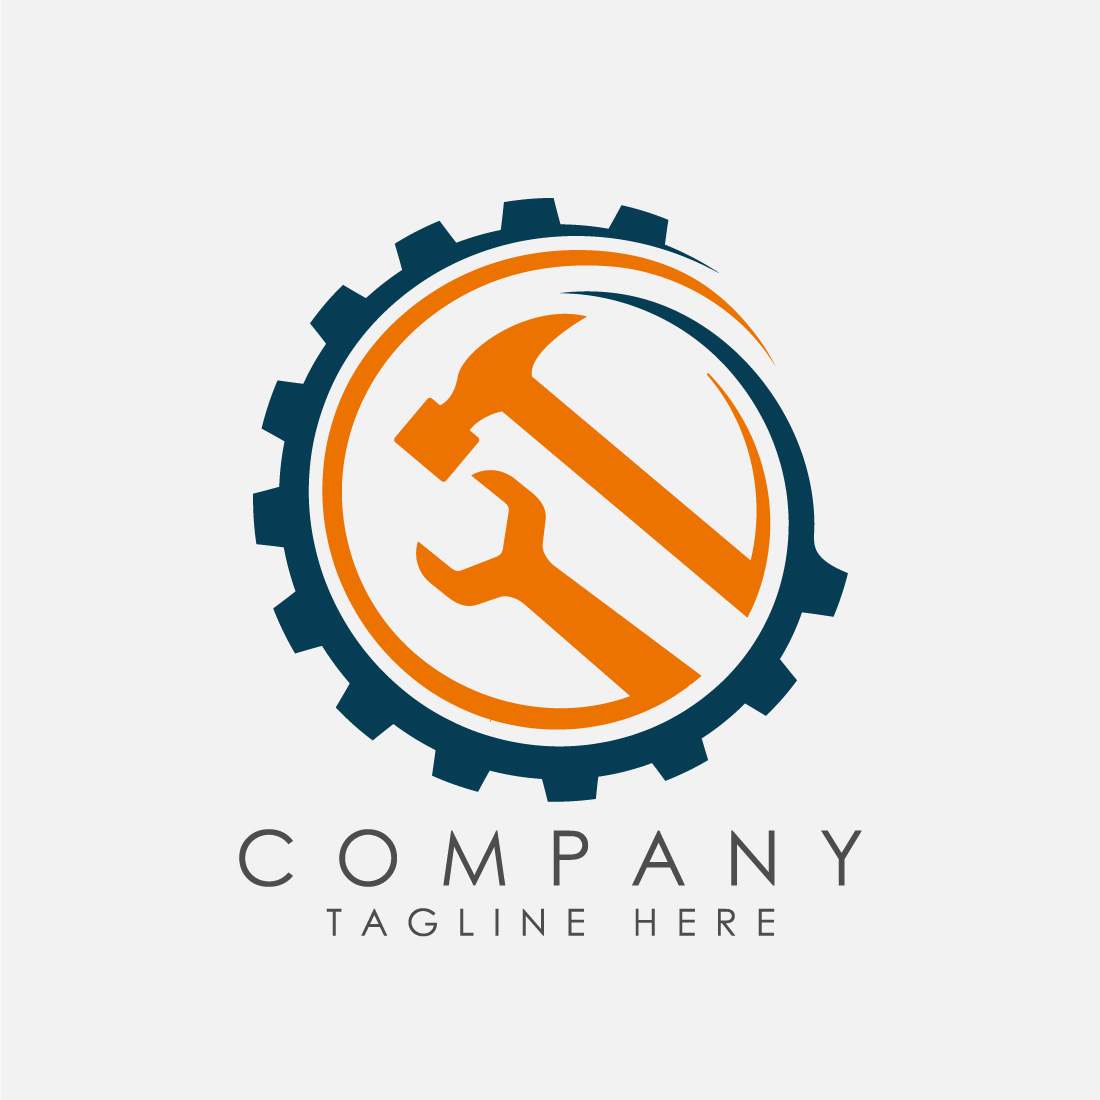 Free Manufacturing Logo Creator